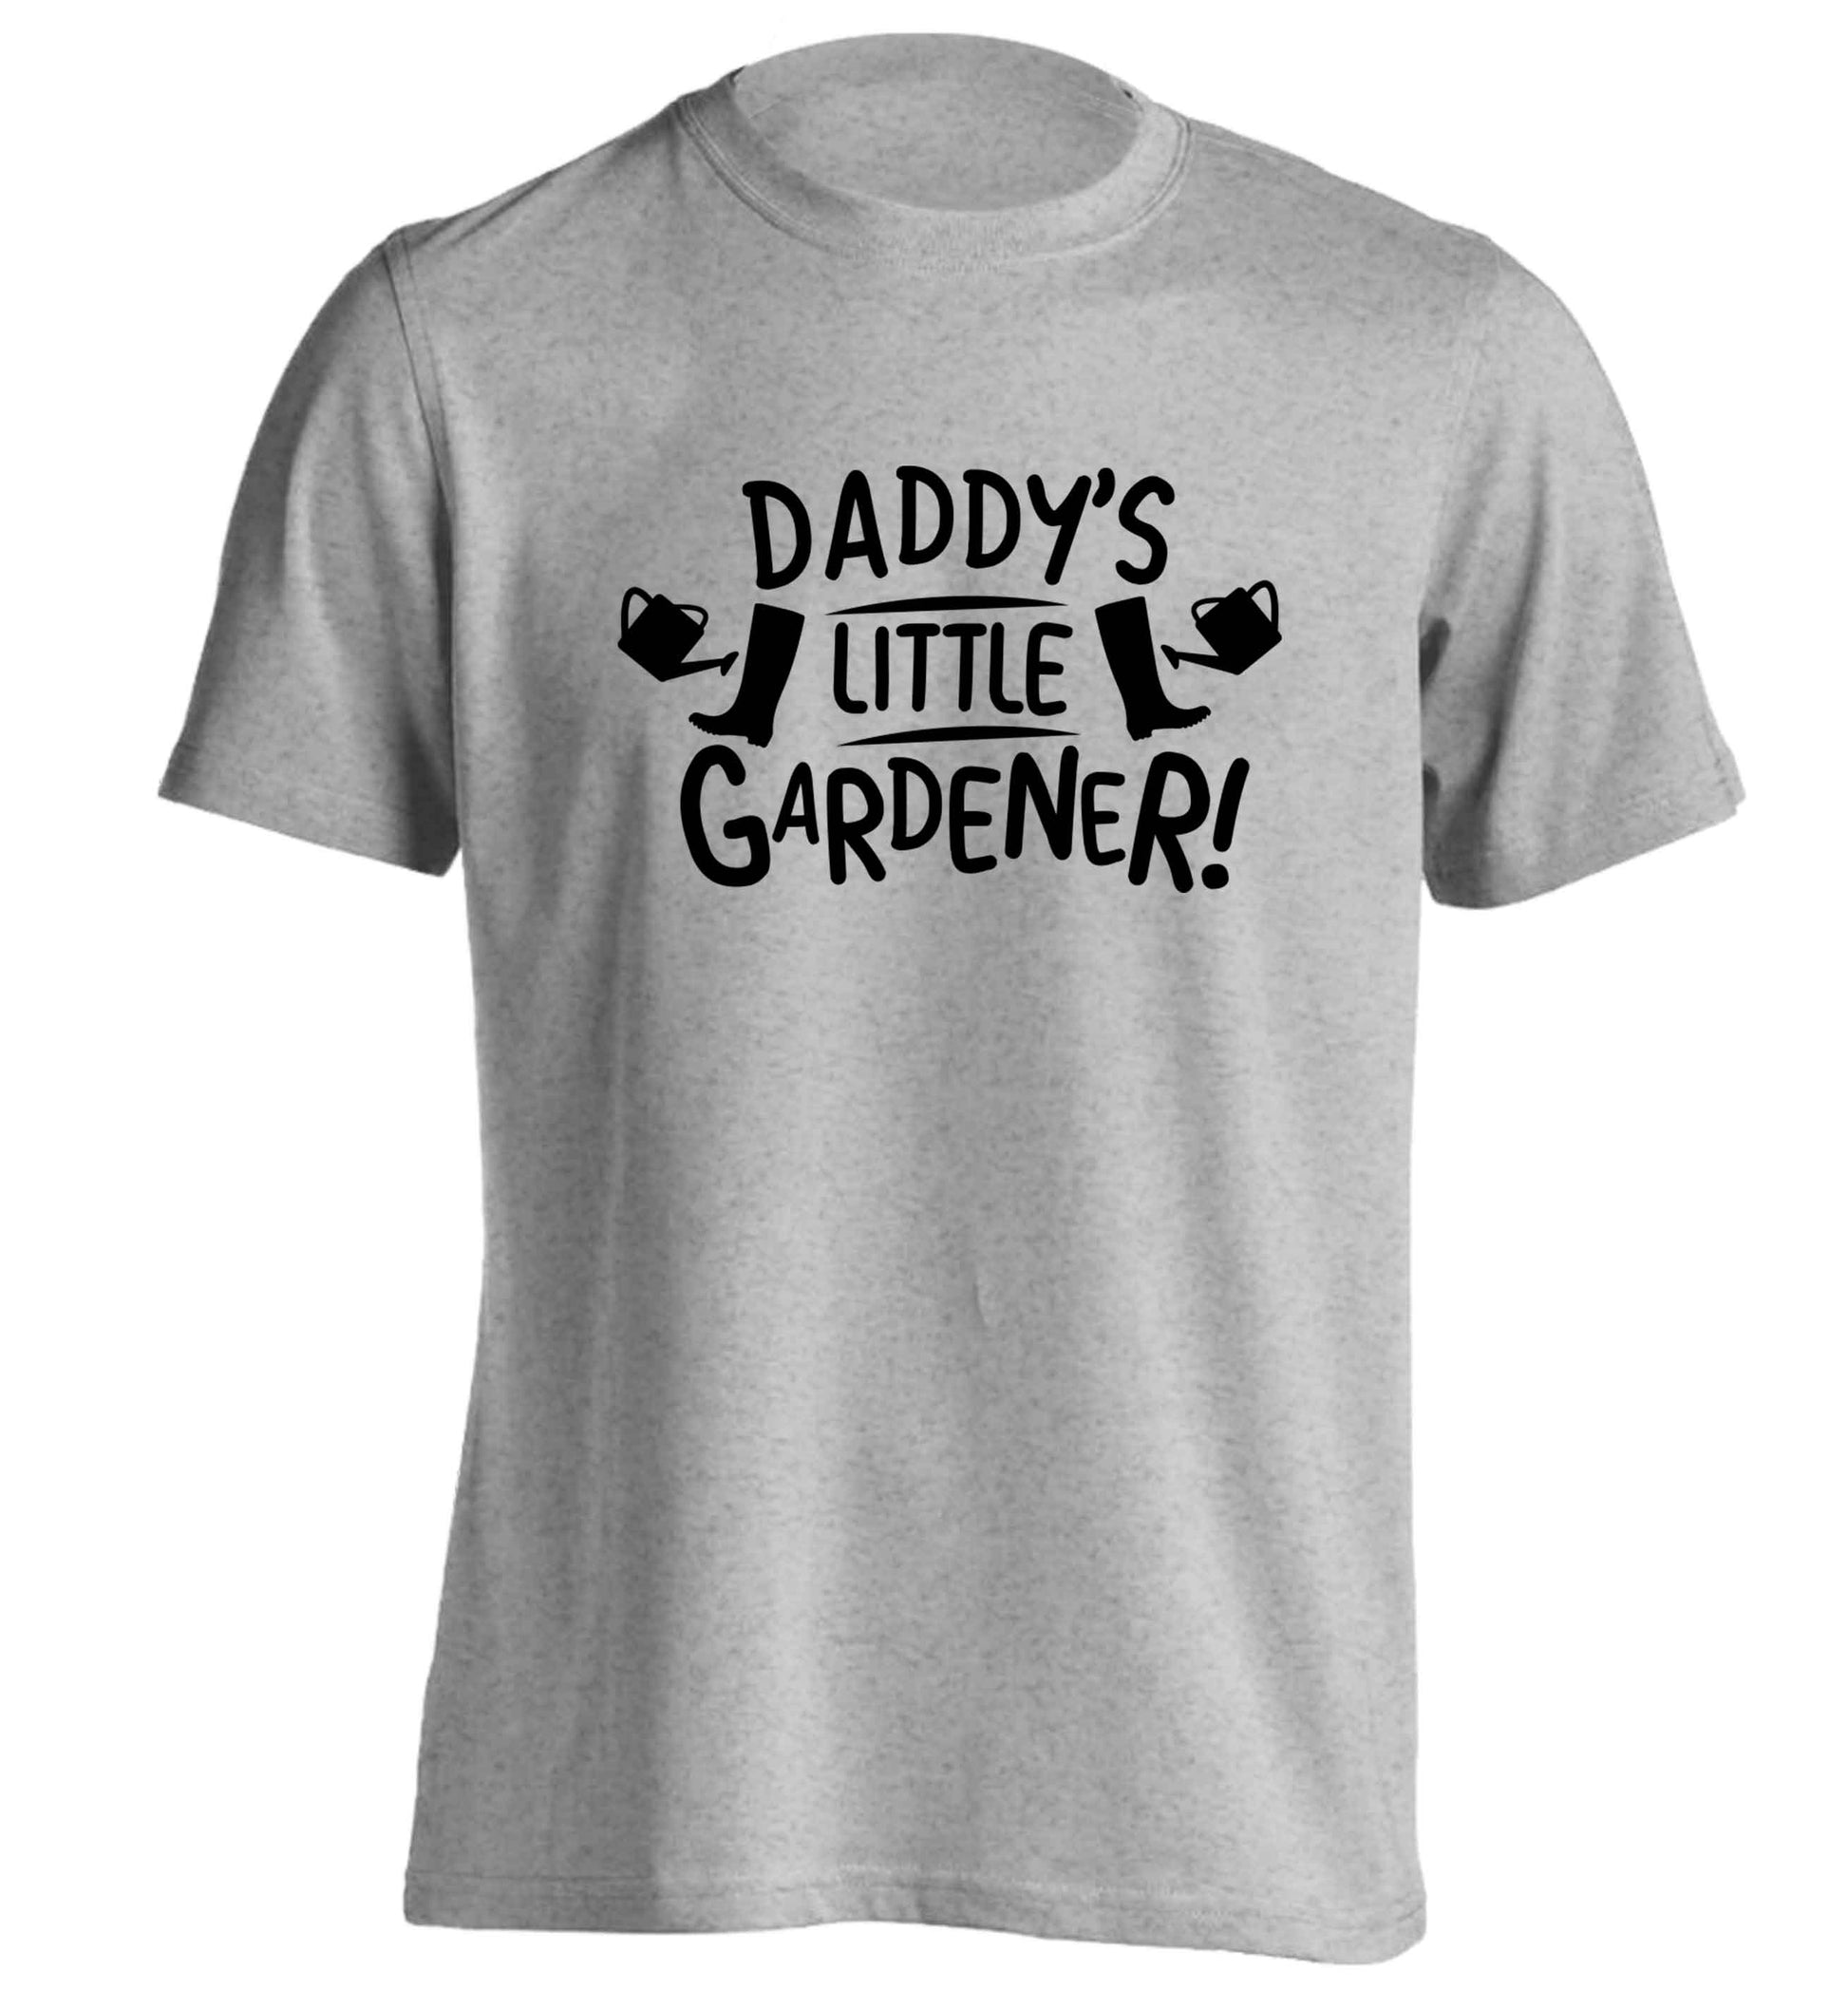 Daddy's little gardener adults unisex grey Tshirt 2XL